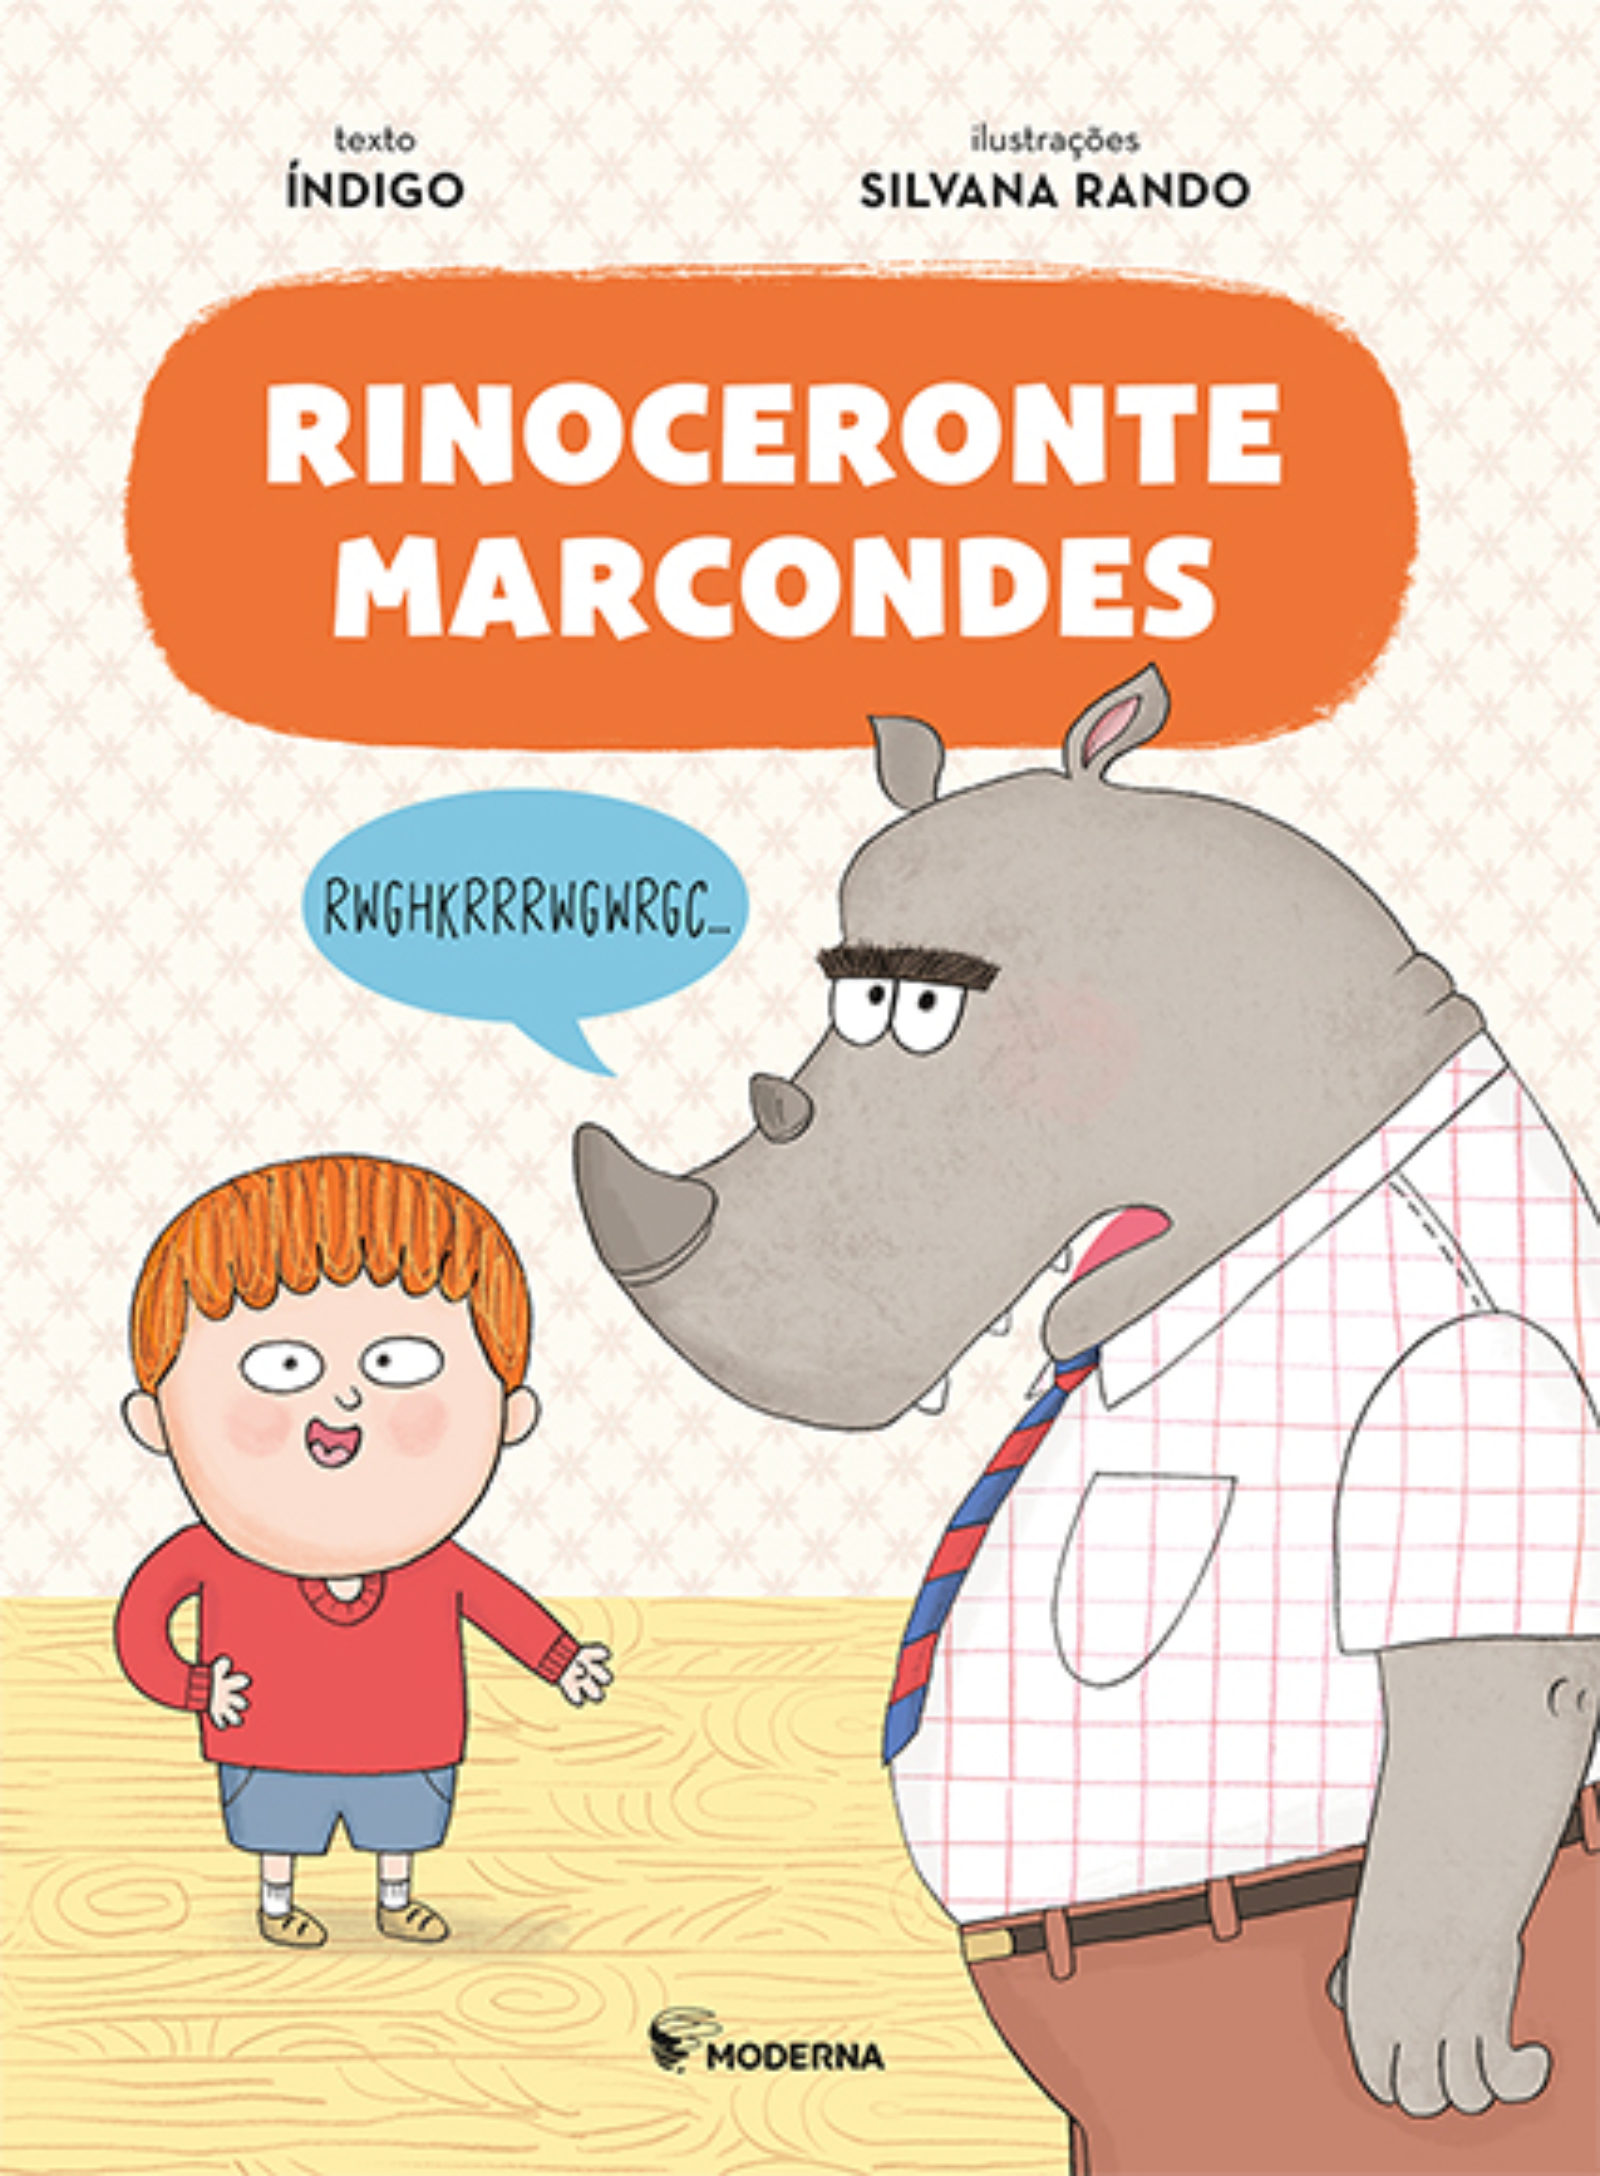 Rinoceronte Marcondes chegando às livrarias